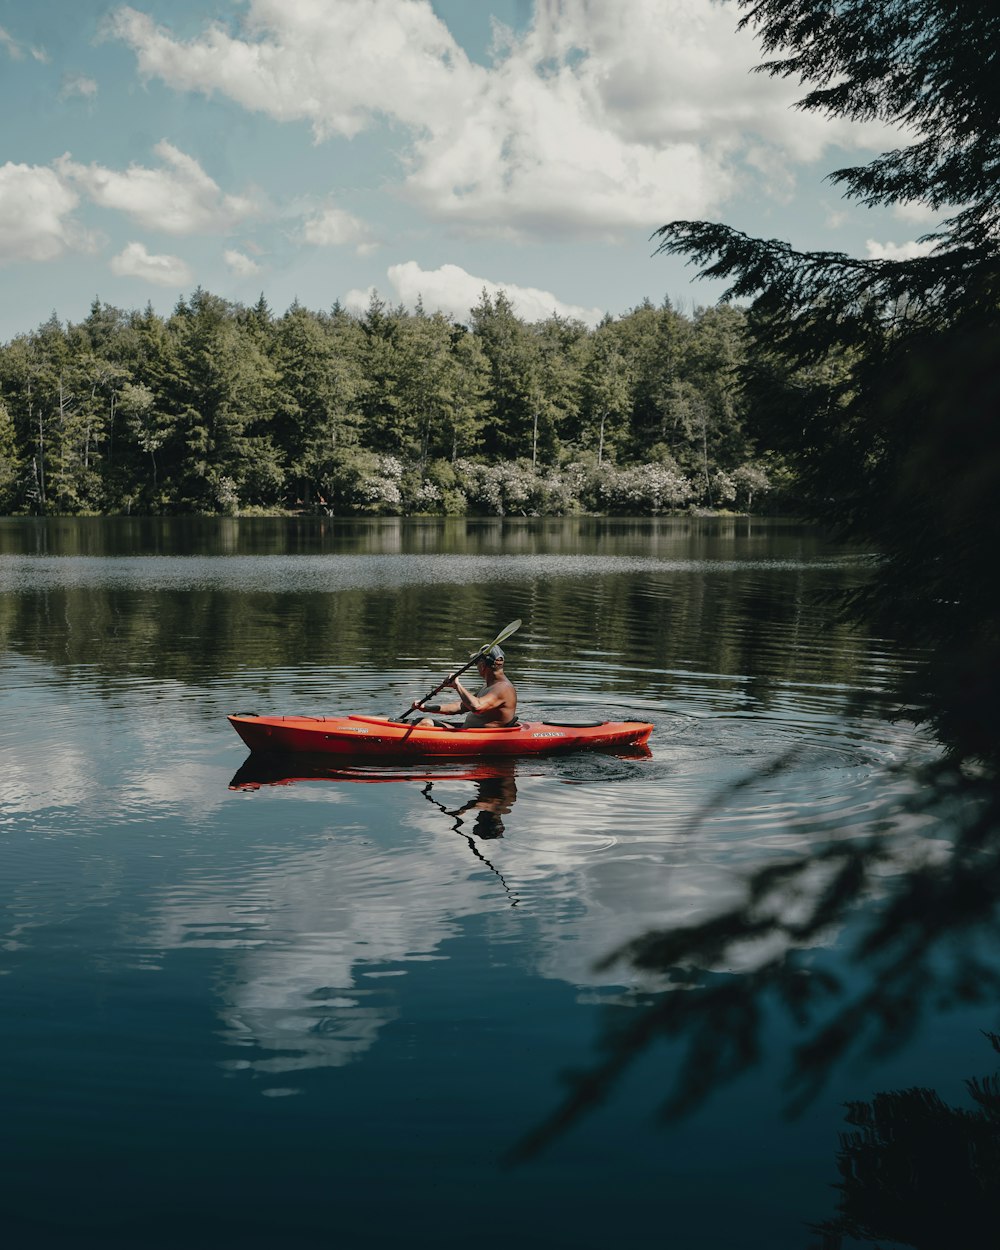 person riding red kayak on lake during daytime